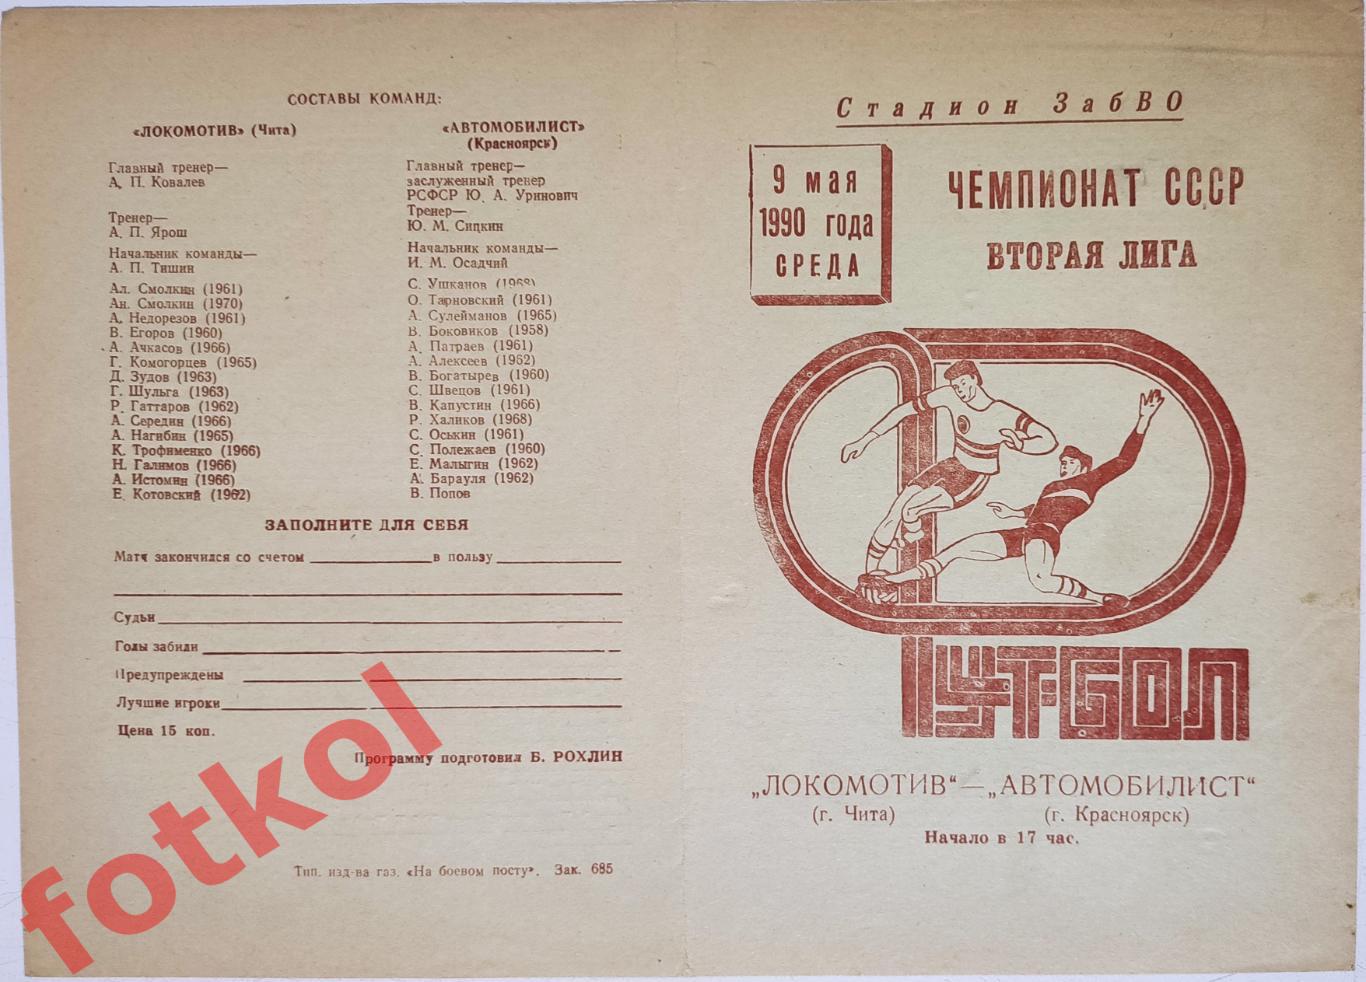 ЛОКОМОТИВ Чита - АВТОМОБИЛИСТ Красноярск 09.05.1990